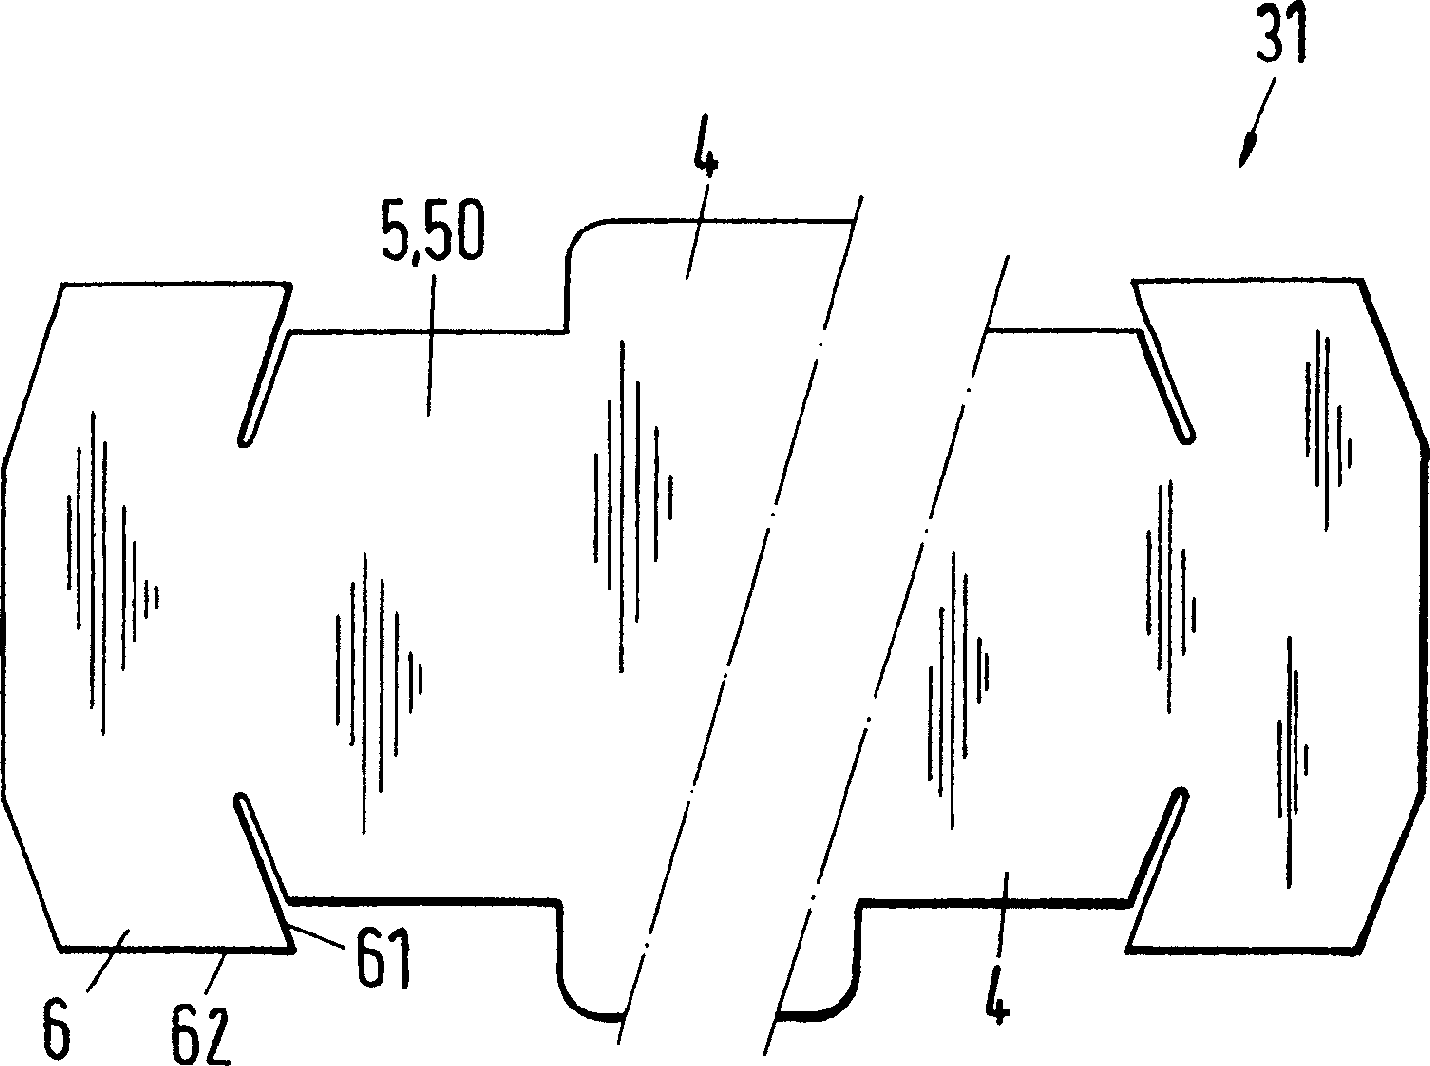 Tray valve for a tray column